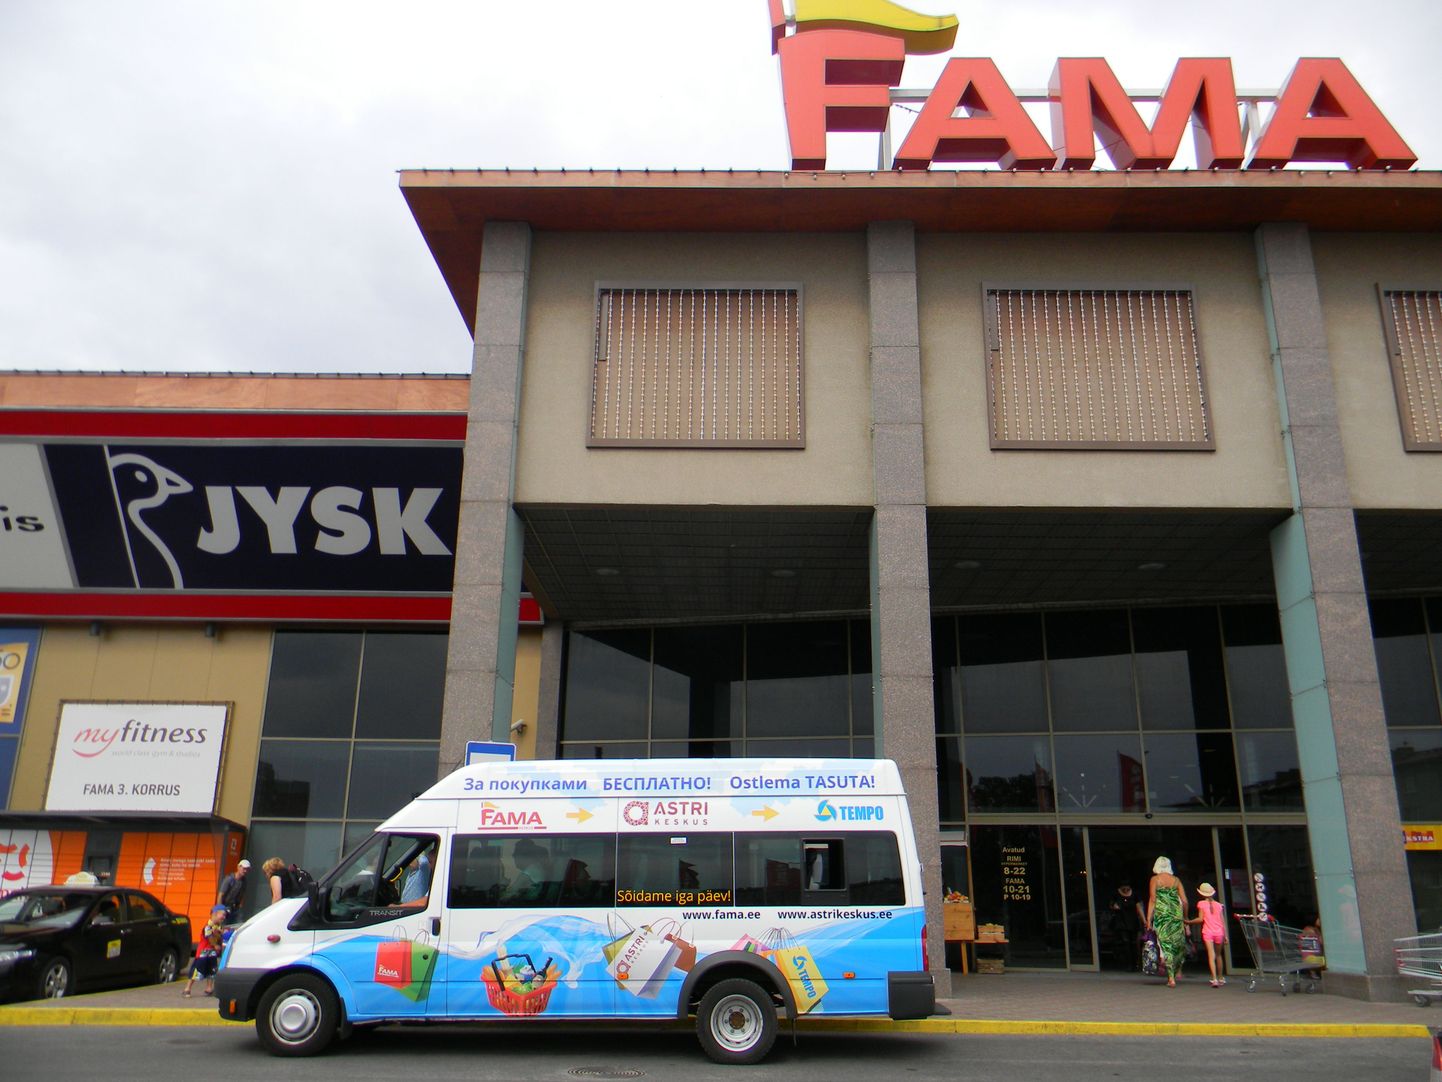 В минувшие выходные в Нарве россияне, как обычно, покупали продукты, однако их было меньше, чем обычно, да и корзины у них не ломились от эстонской колбасы и сметаны. Полупустым ходил и бесплатный автобус между тремя торговыми центрами Fama, Astri и Темро, которым обычно охотно пользуются шоп-туристы.